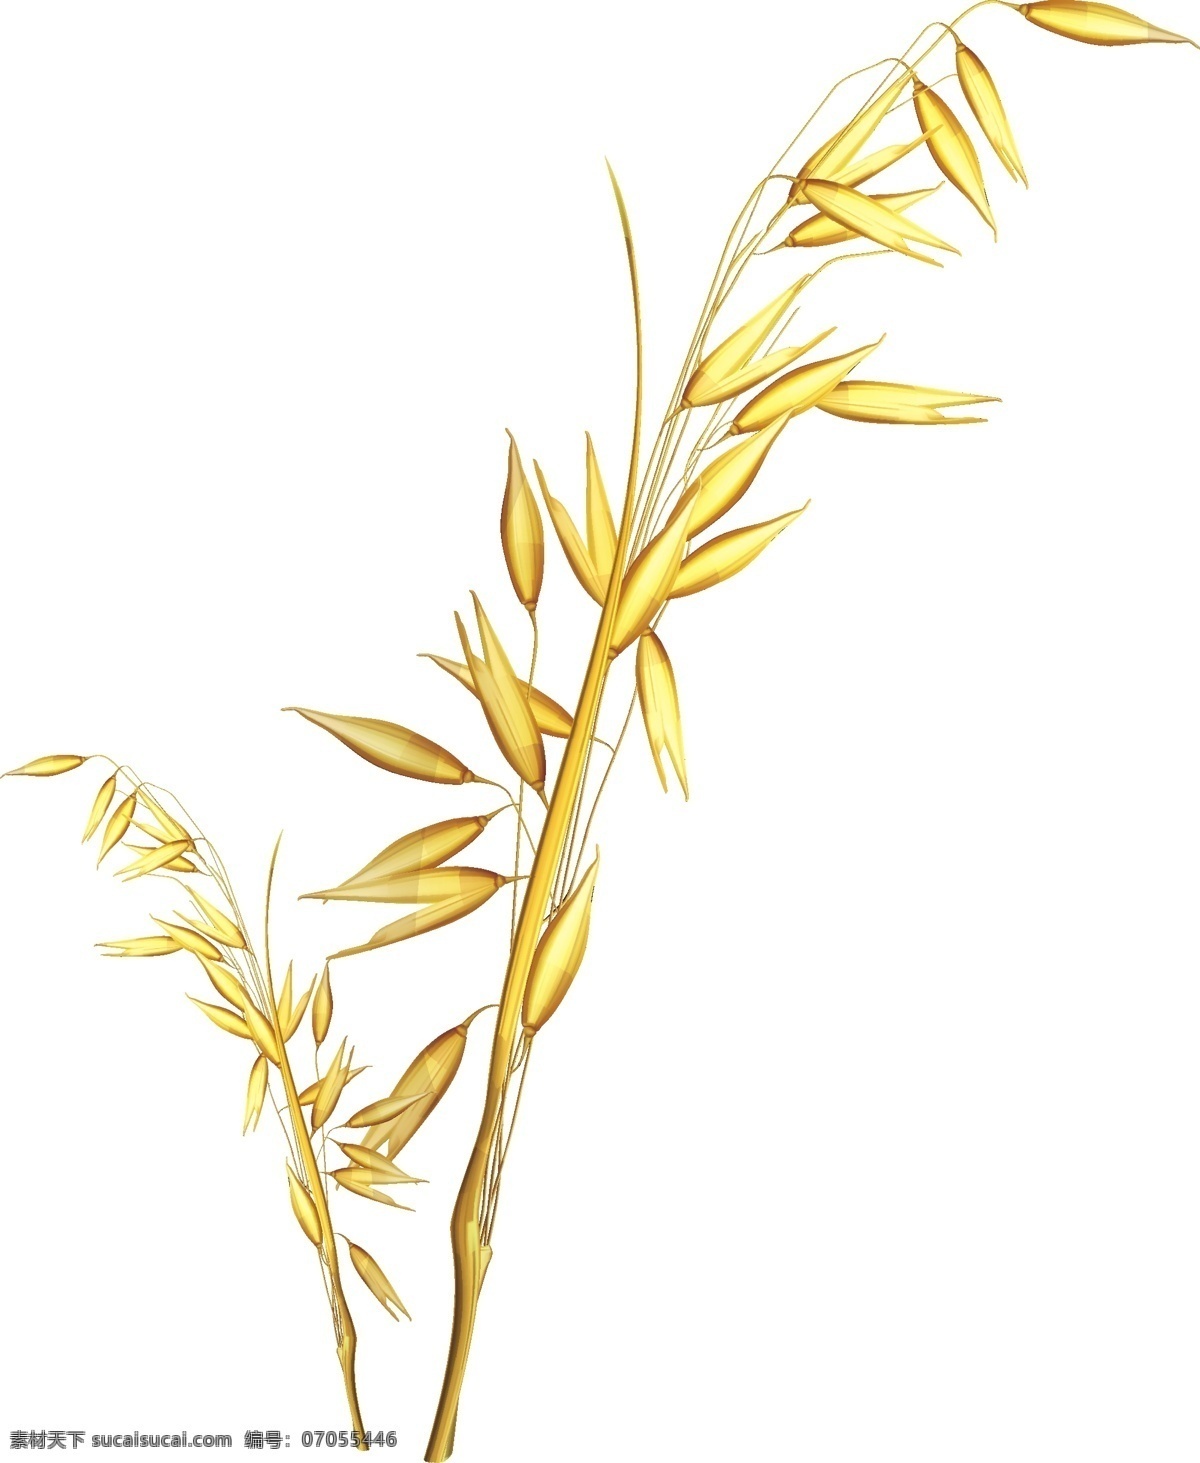 秋收 收获 季节 小麦 麦穗 麦子 秋季 水稻 大麦 分层 免抠 平面 矢量